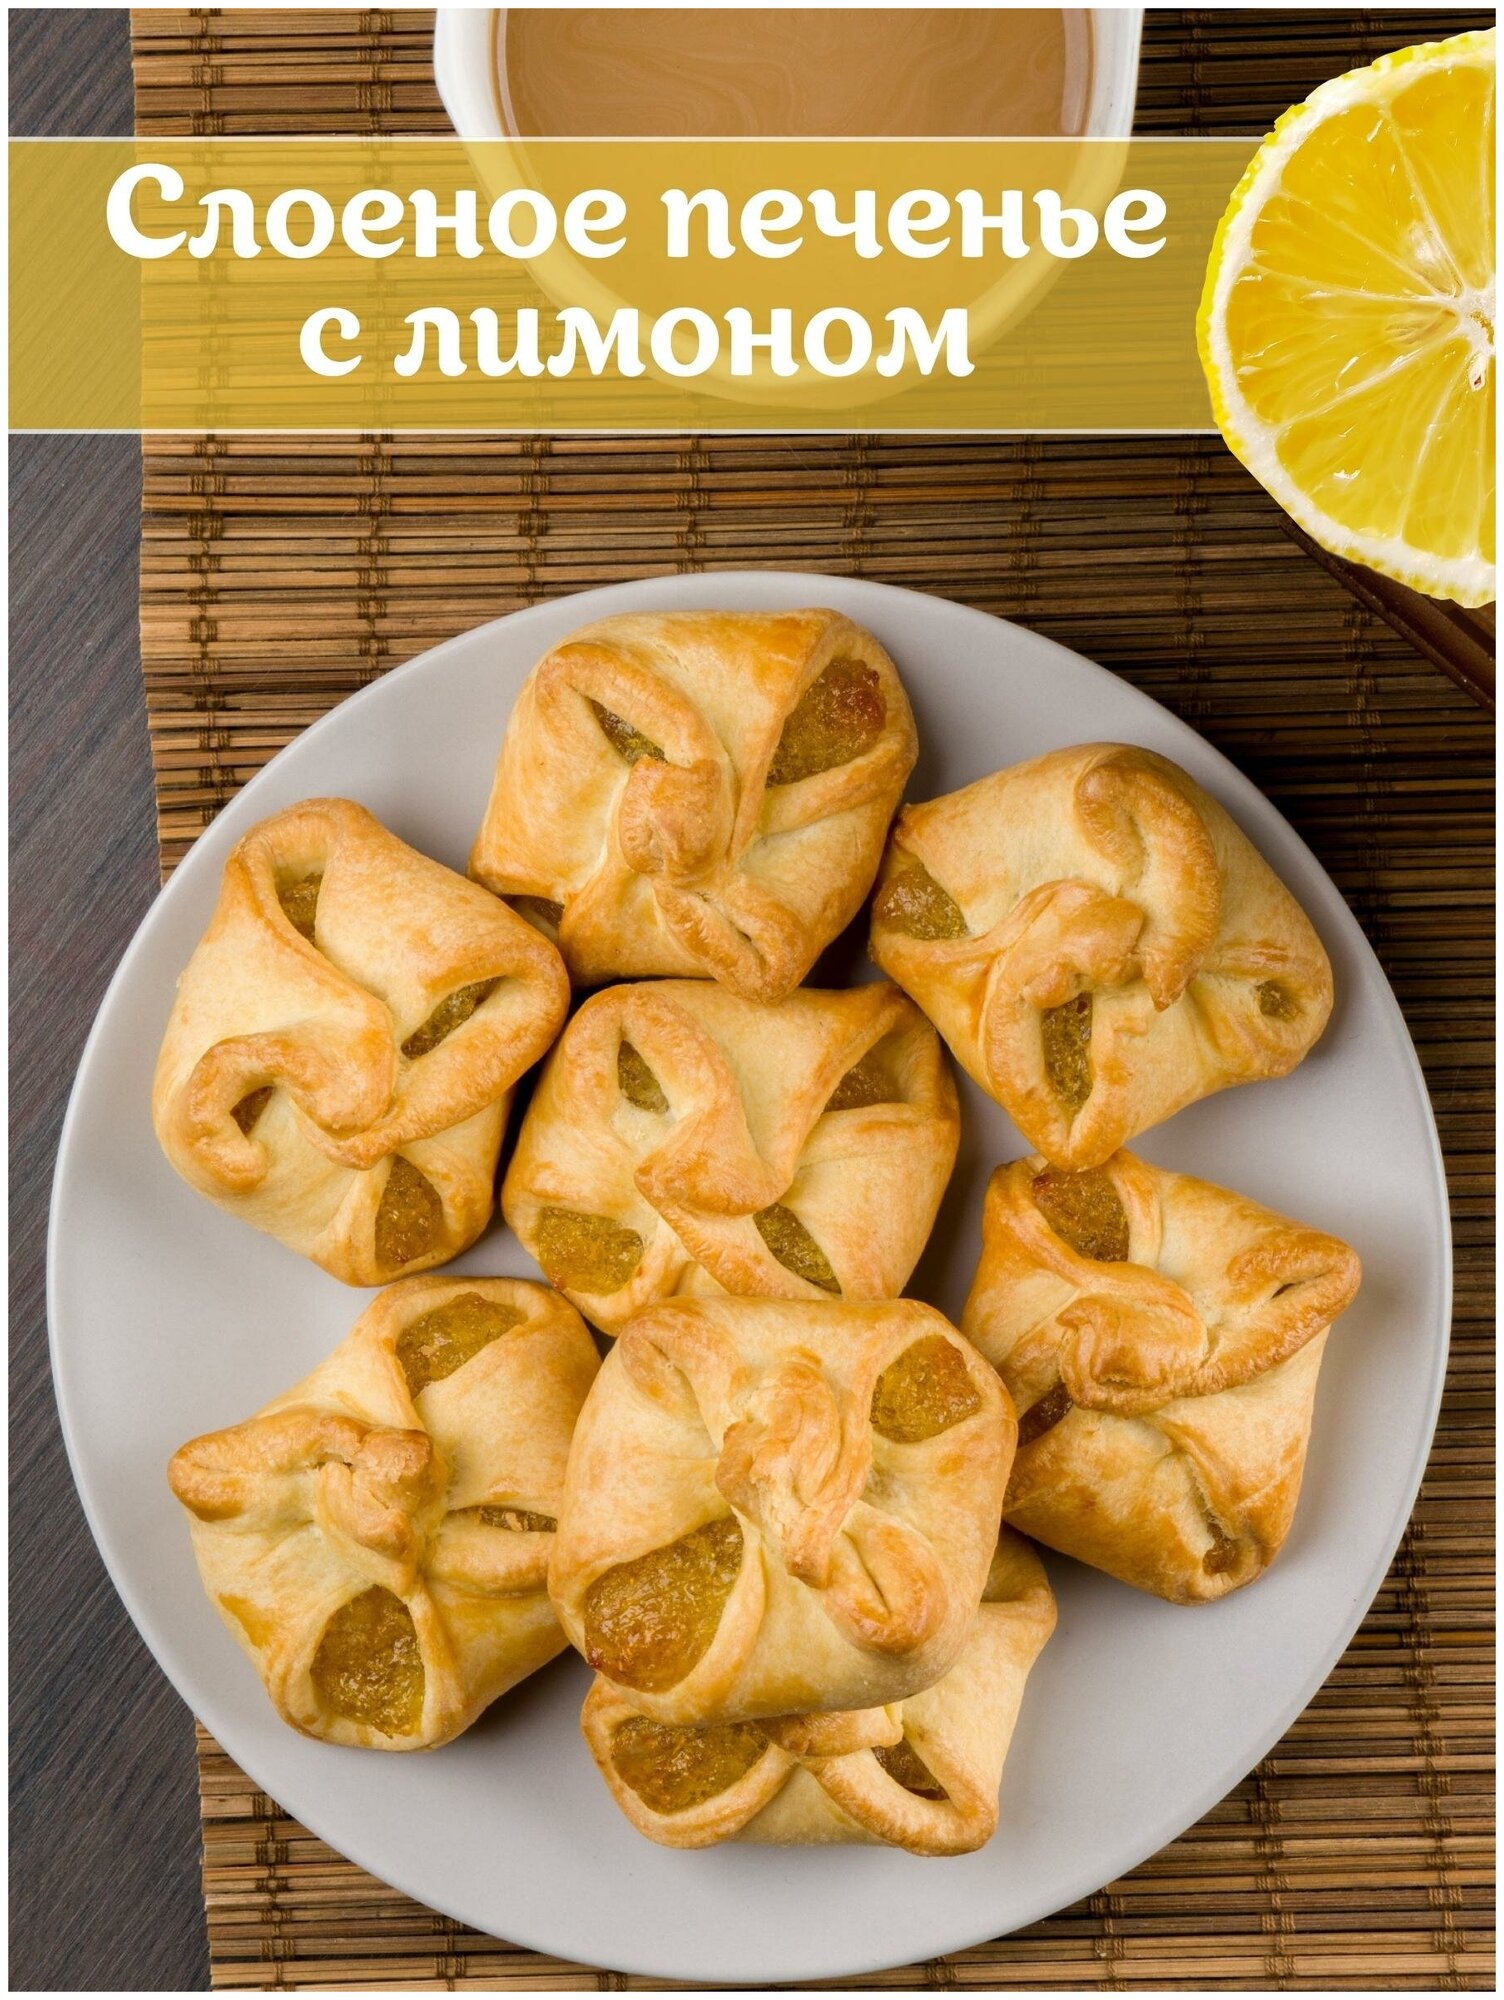 Печенье слоеное бомарше лимон, 1.2 кг - фотография № 3